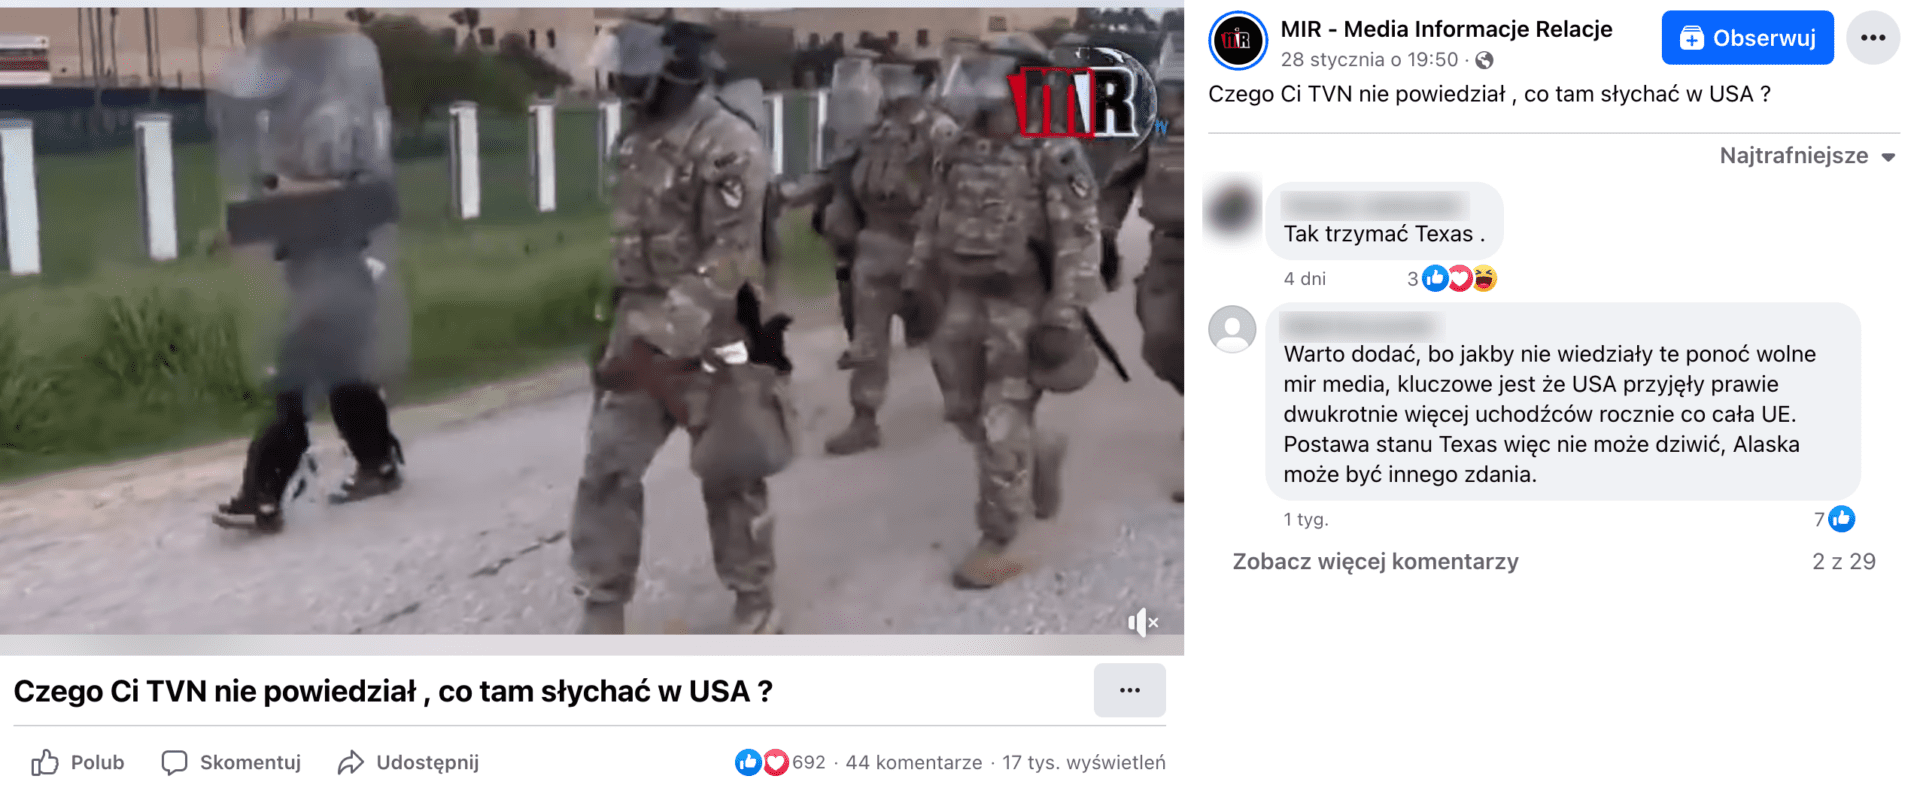 Zrzut ekranu posta na Facebooku. W kadr omawianego filmu pokazuje maszerującą grupę ludzi ubranych w mundury i hełmy ochronne. Niektórzy z nich w ręku trzymają przezroczyste tarcze.